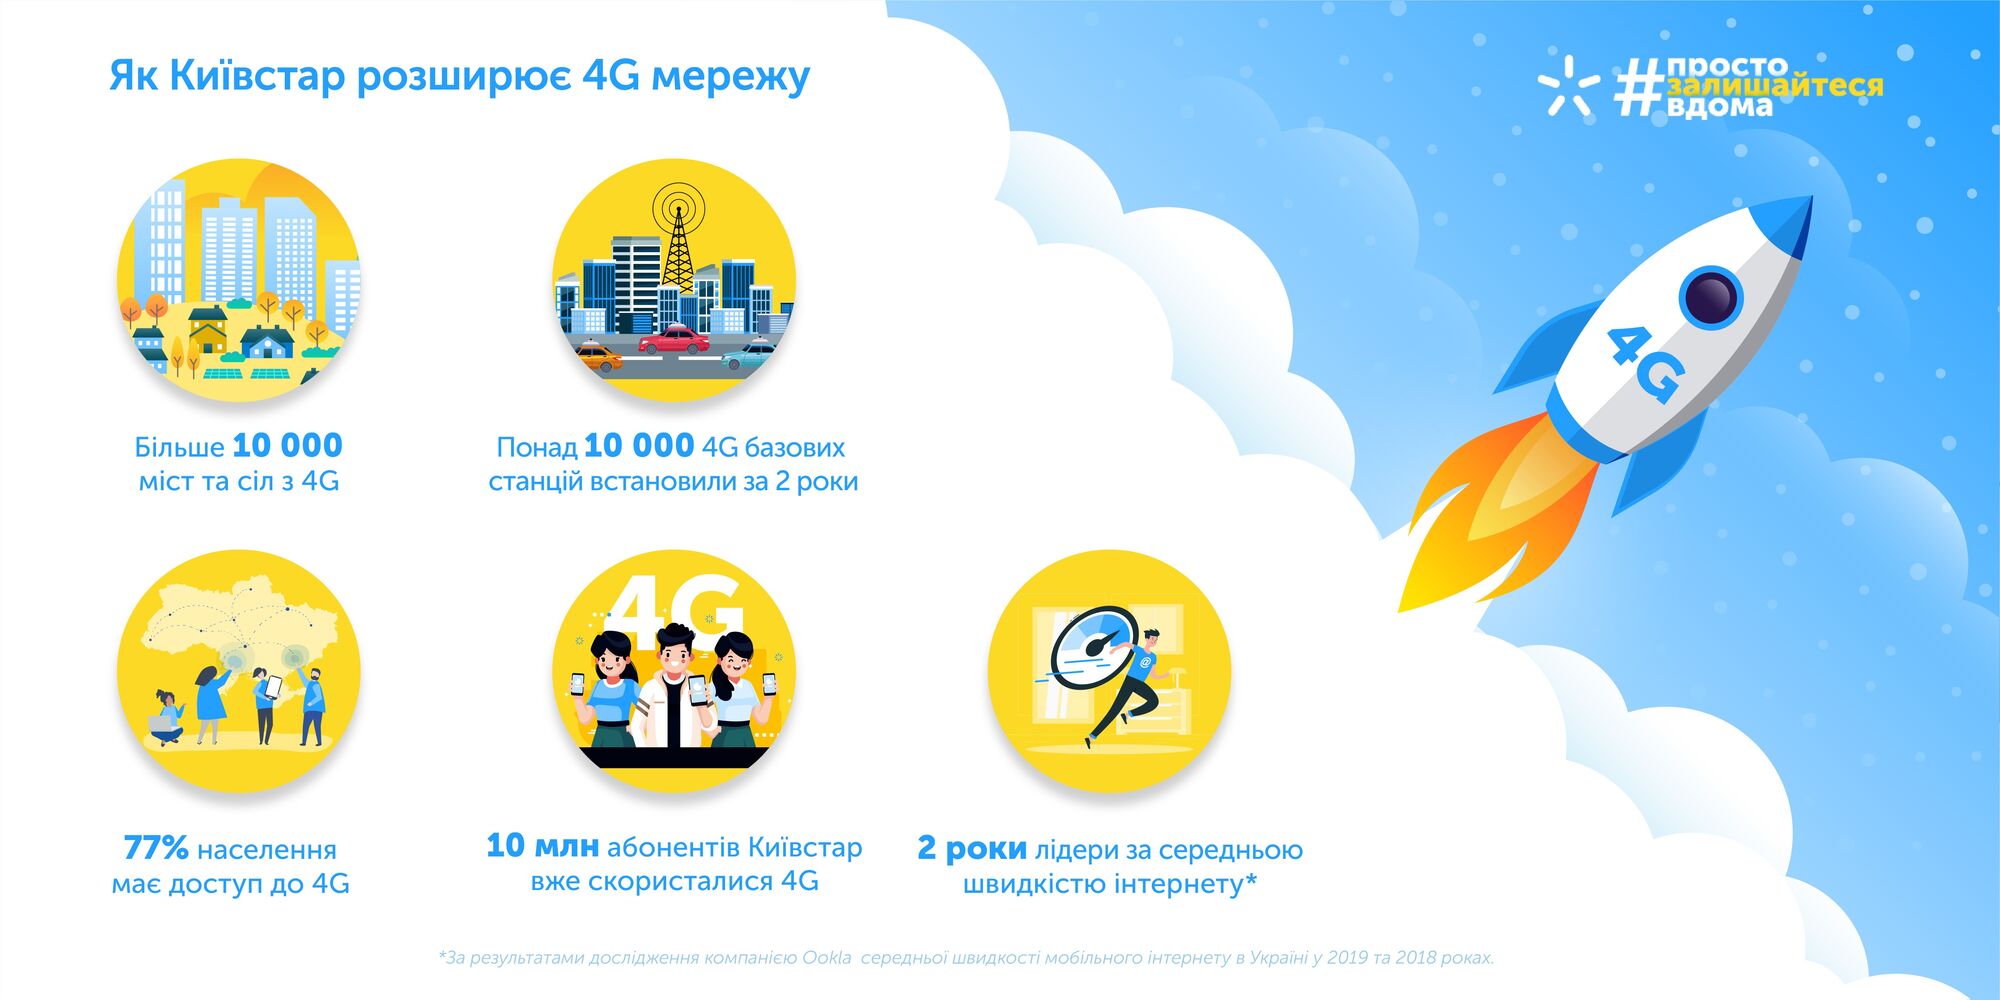 Киевстар за два года обеспечил 4G в 10 тысячах населенных пунктов